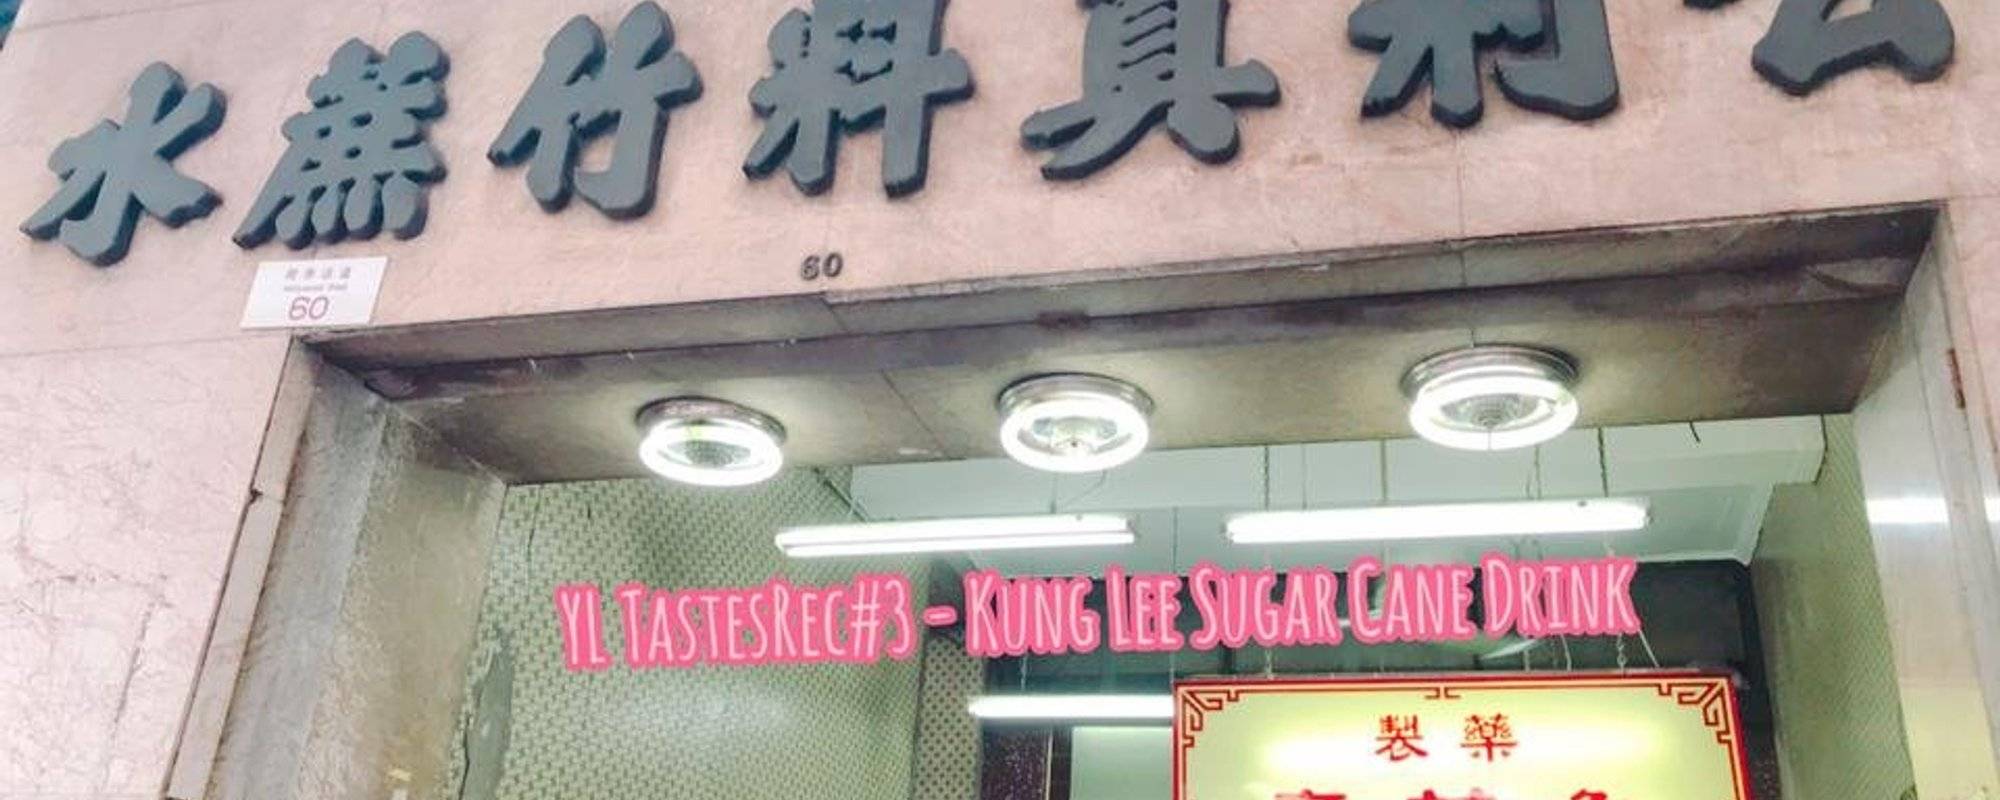 YL TastesRec#3 Kung Lee Sugar Cane Drink